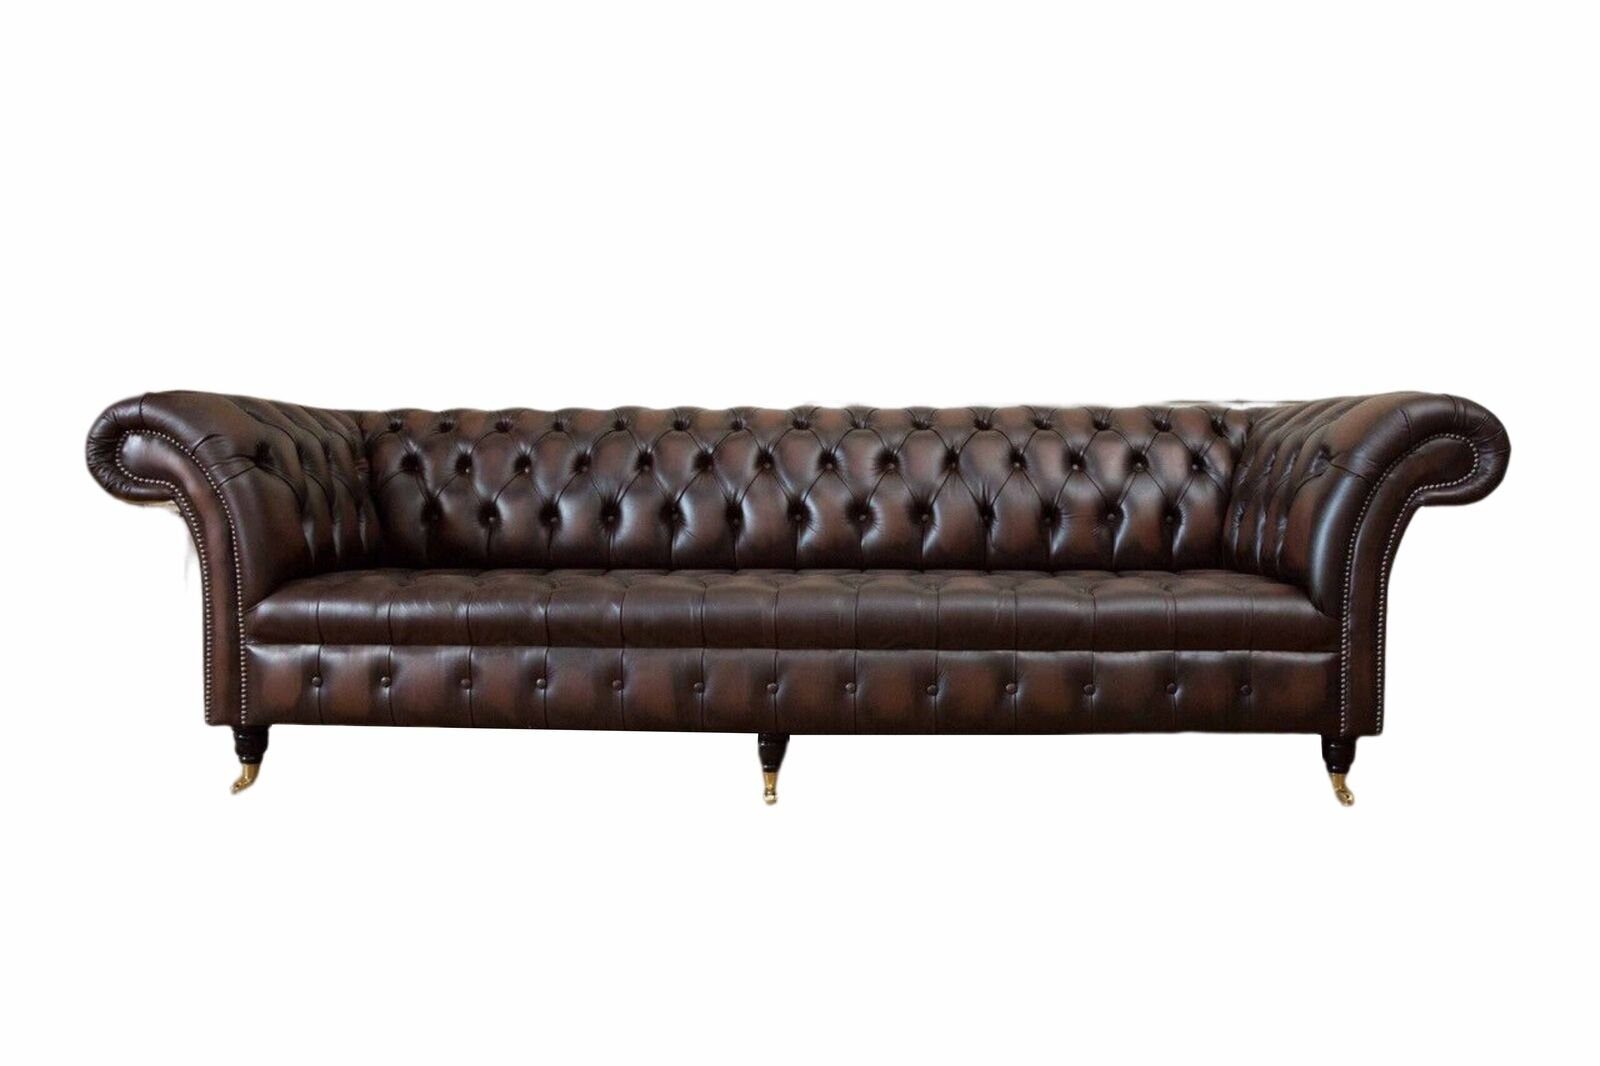 Leder 4 Europe Made In Ledersofa Couch Luxus Chesterfield, Sitzer Sofa JVmoebel Sofa Klassische